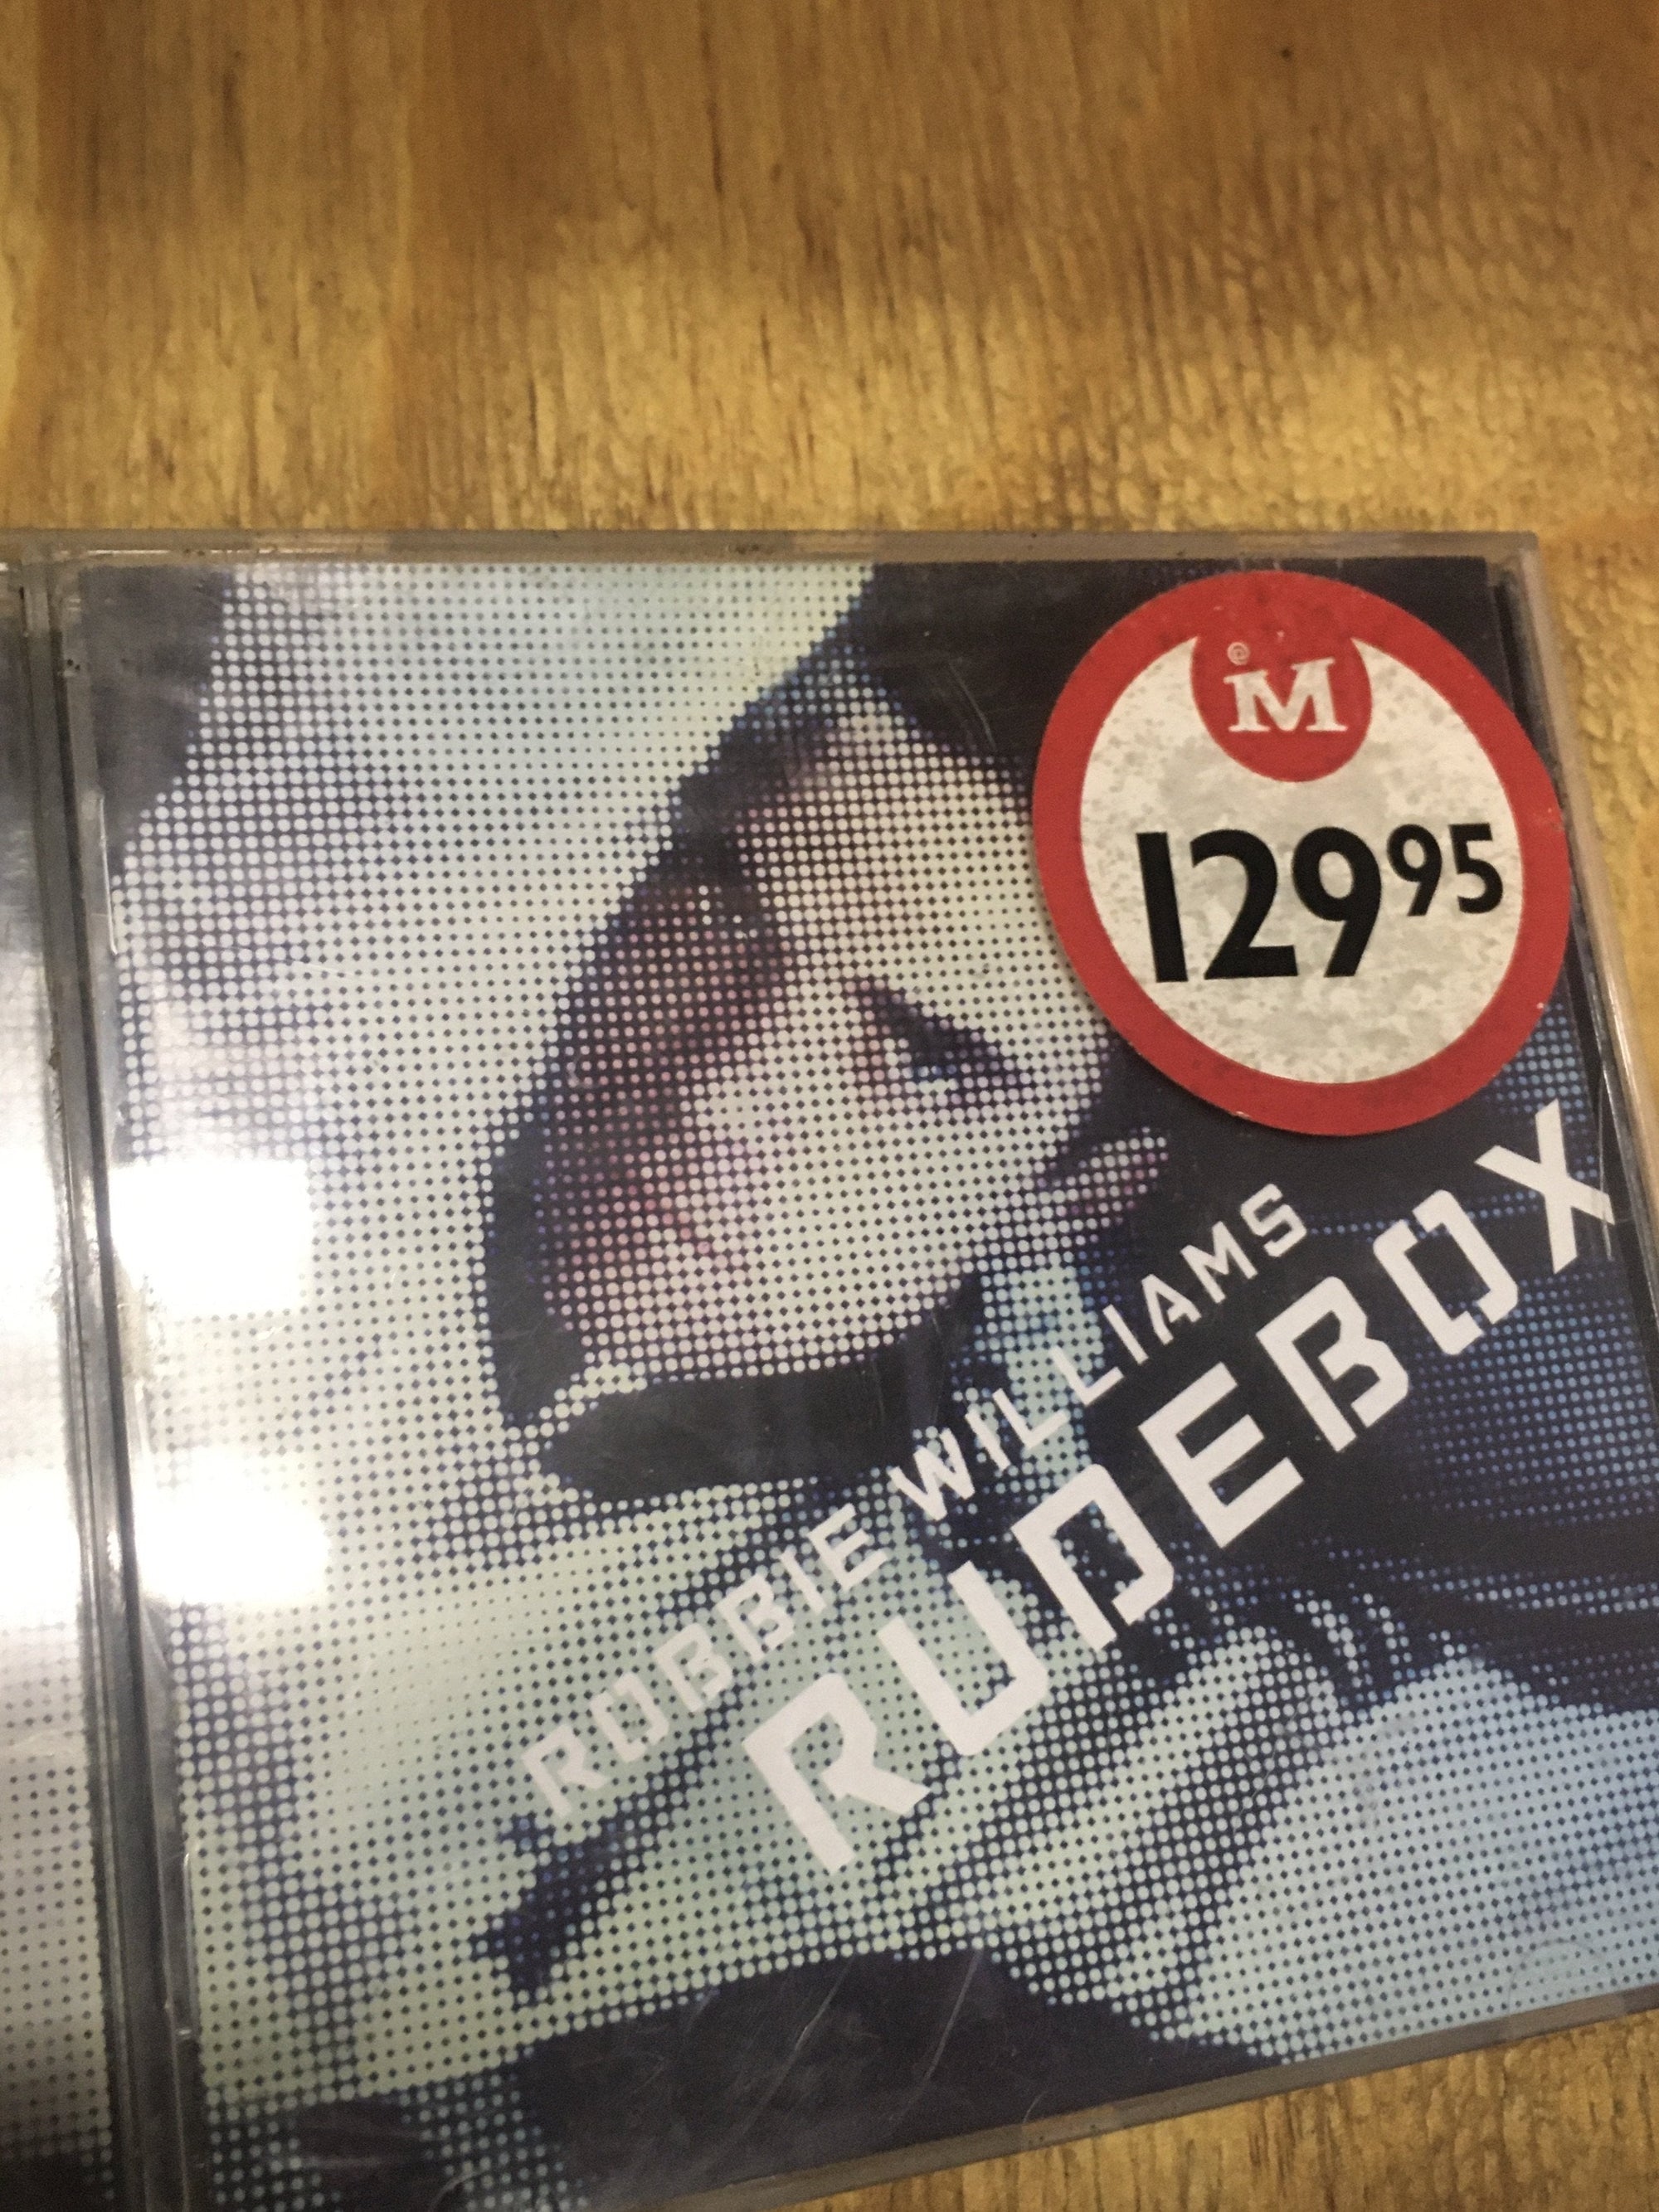 Robbie William: Rudebox - CD - 2ndhandwarehouse.com